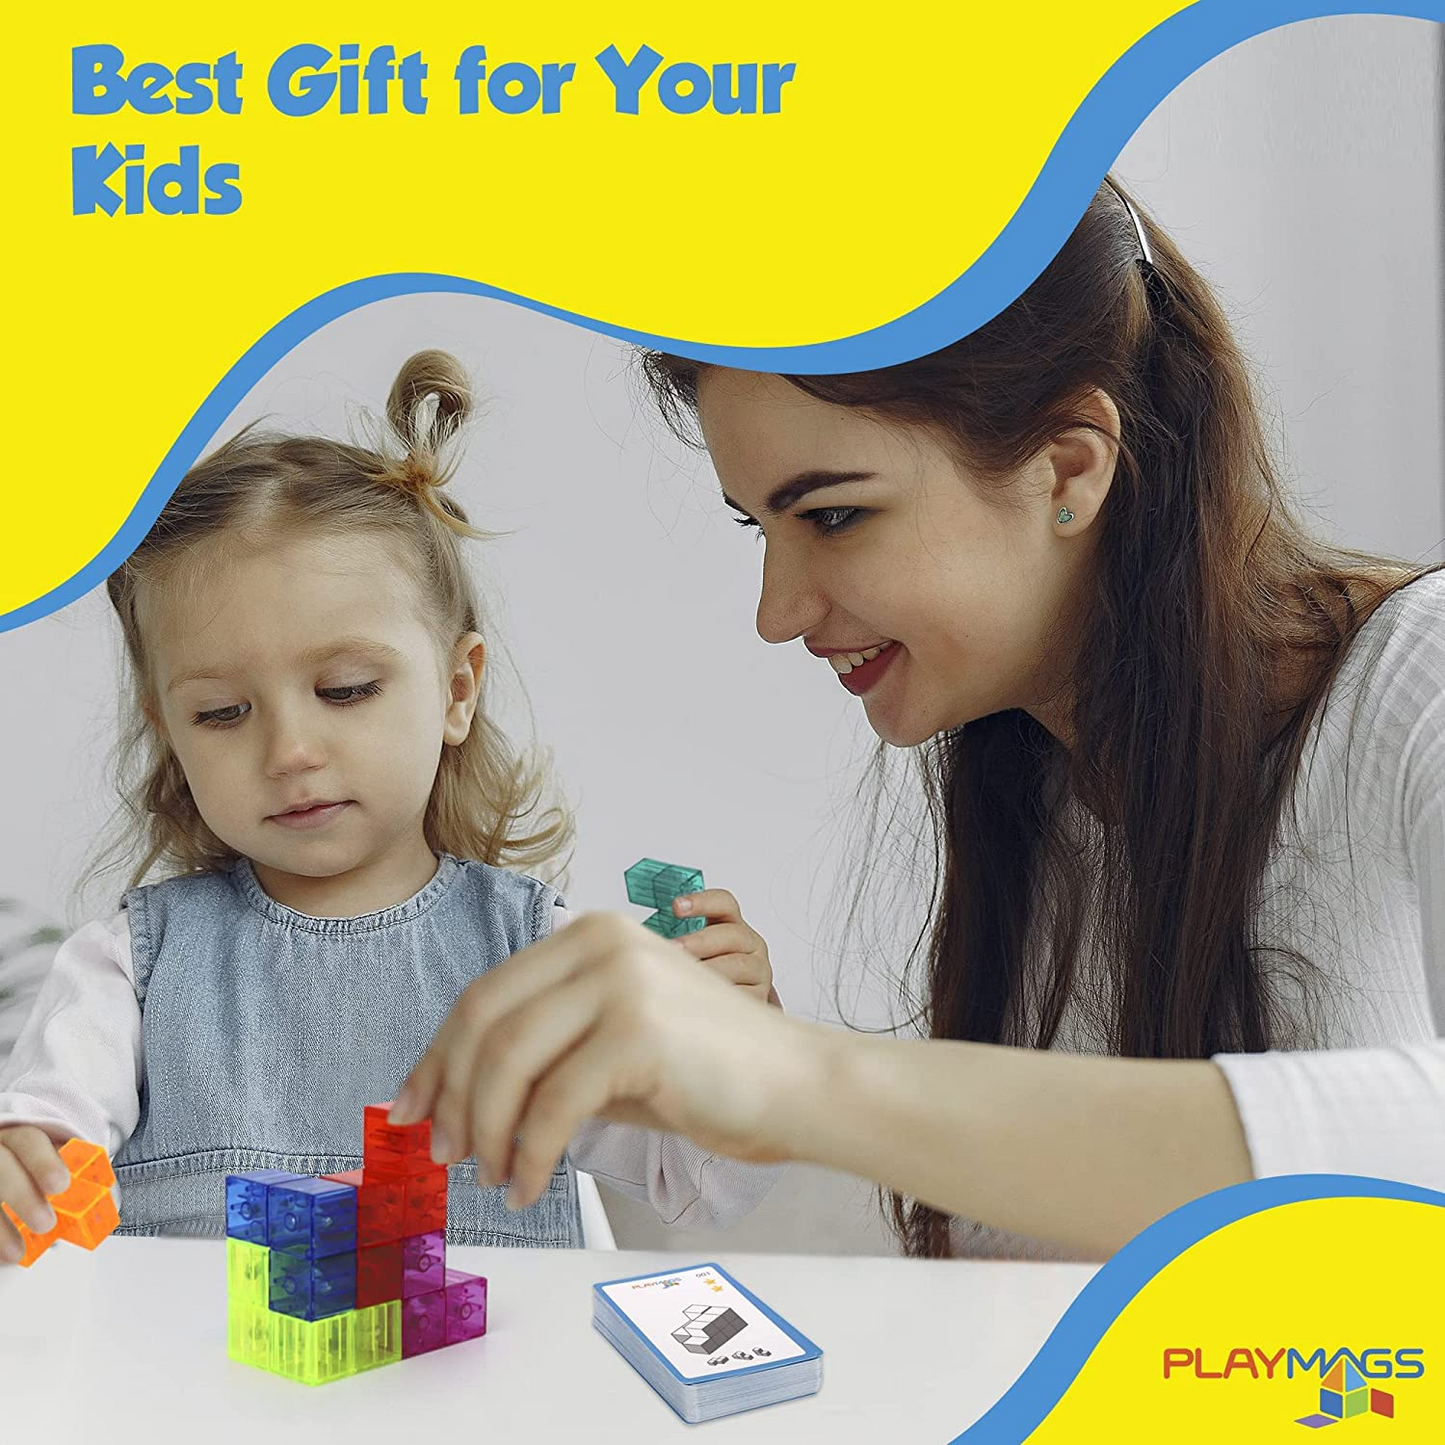 Playmags Cubo inteligente com cartões de desafio de cubo inteligente, blocos de construção para jogos criativos abertos, brinquedos educativos para crianças de 3 anos ou mais